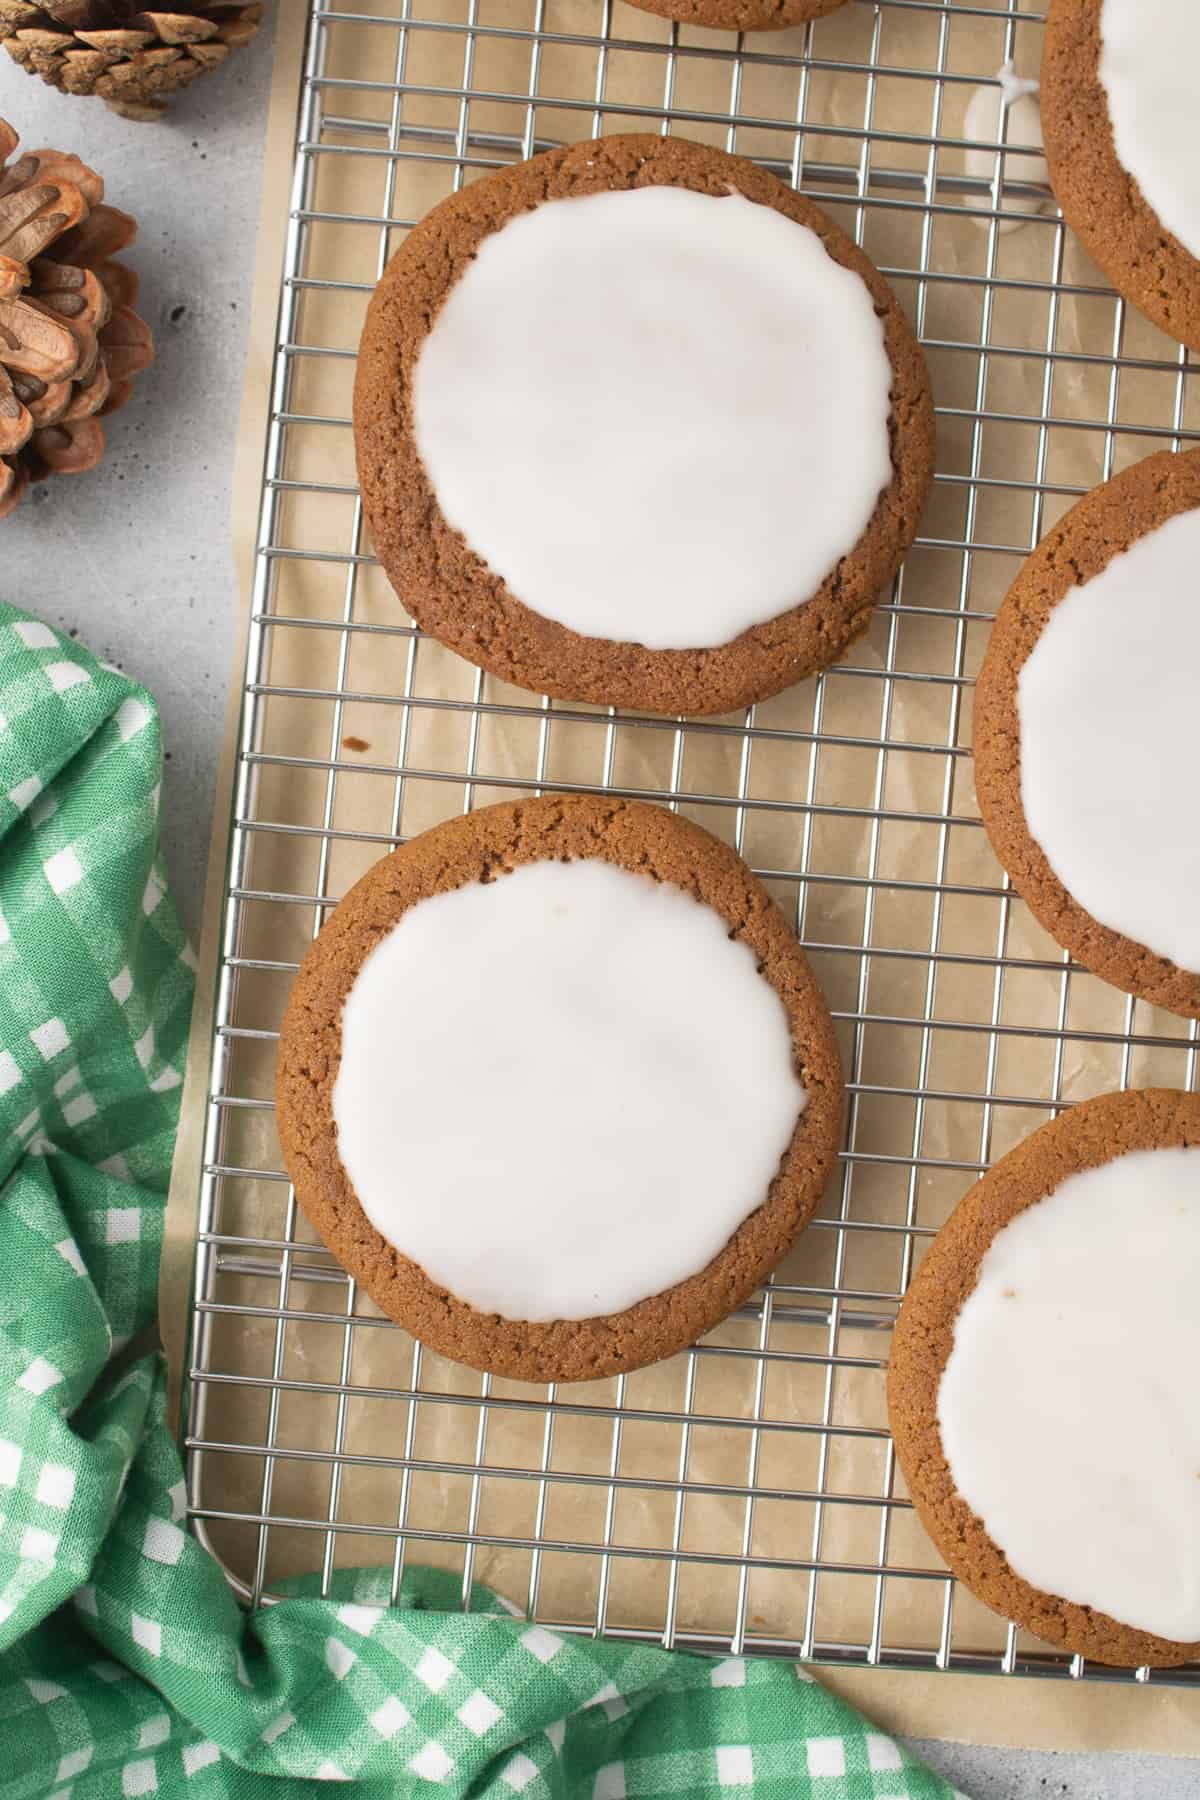 वायर रैक पर बर्फ़युक्त गुड़ कुकीज़ का एक क्लोज़ अप टॉप डाउन शॉट।